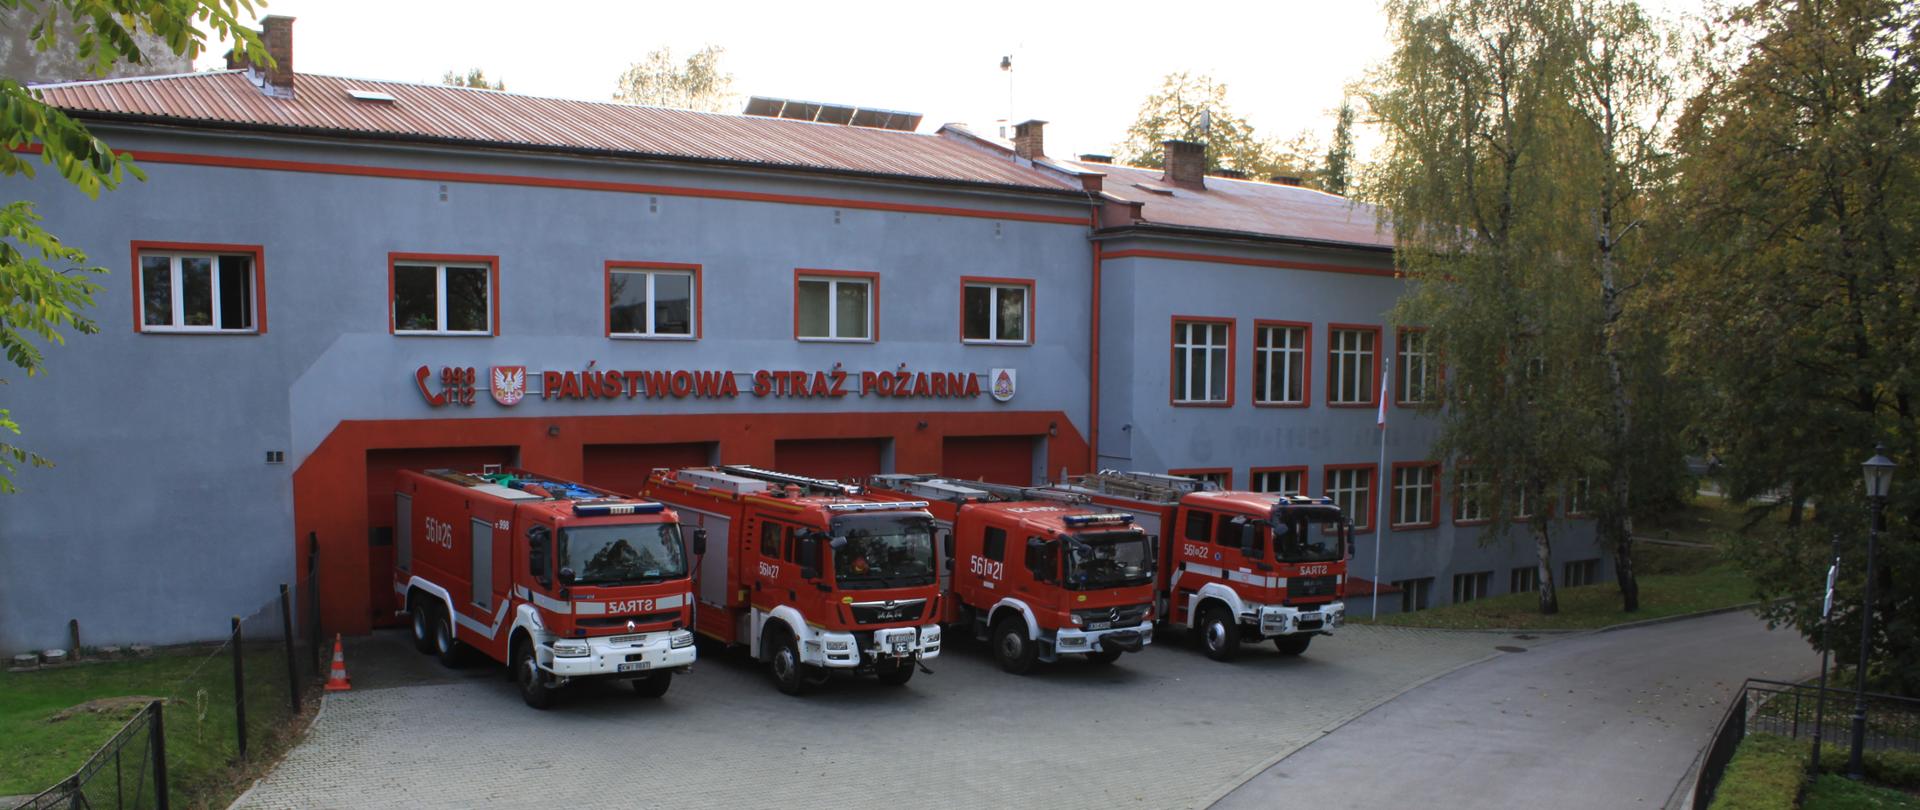 Zdjęcie zrobione na tle fasady budynku Komendy Powiatowej Państwowej Straży Pożarnej w Wieliczce od strony stawu na teranie Kopalni soli Wieliczka. Przed czterema bramami garażowymi stoją ciężarowe samochody strażackie. 